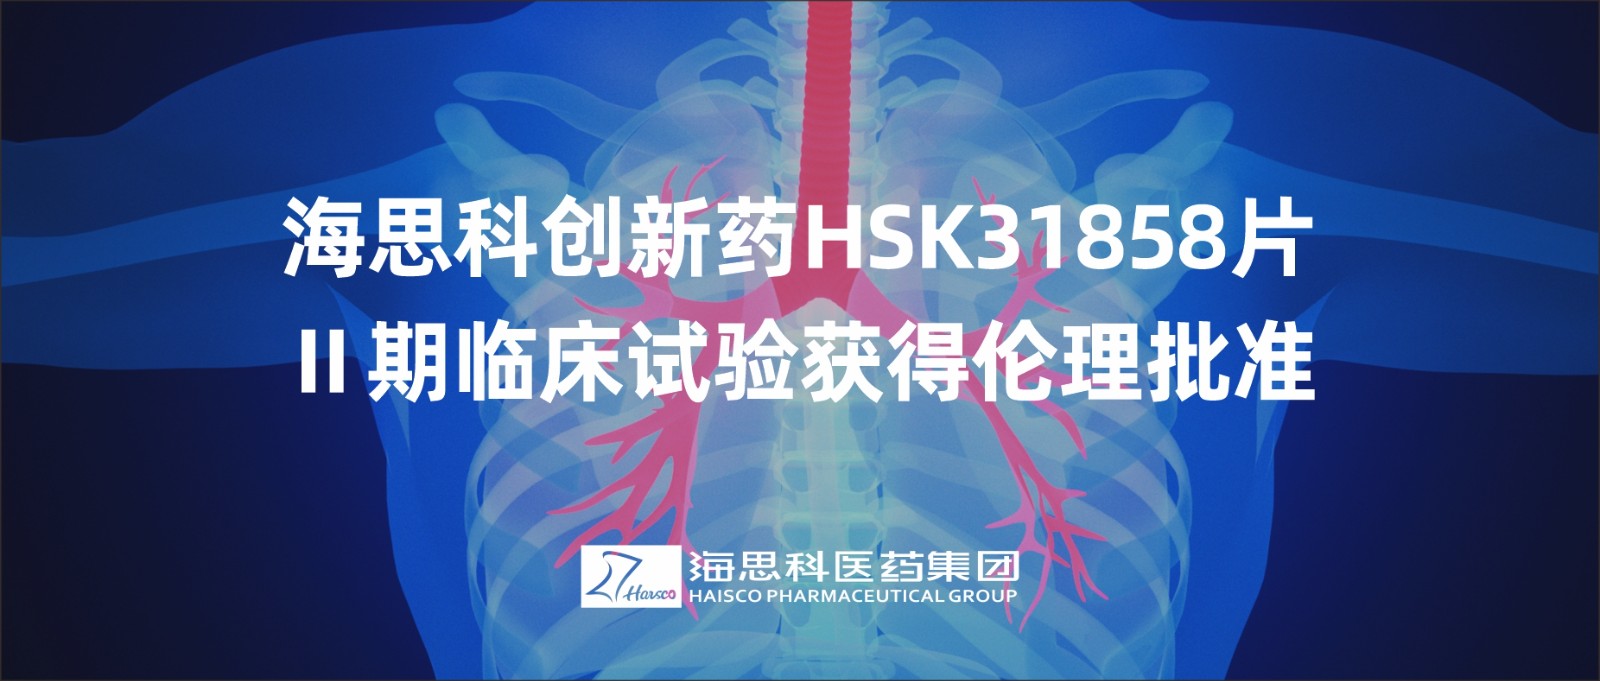 AG电投厅创新药HSK31858片Ⅱ期临床试验获得伦理批准